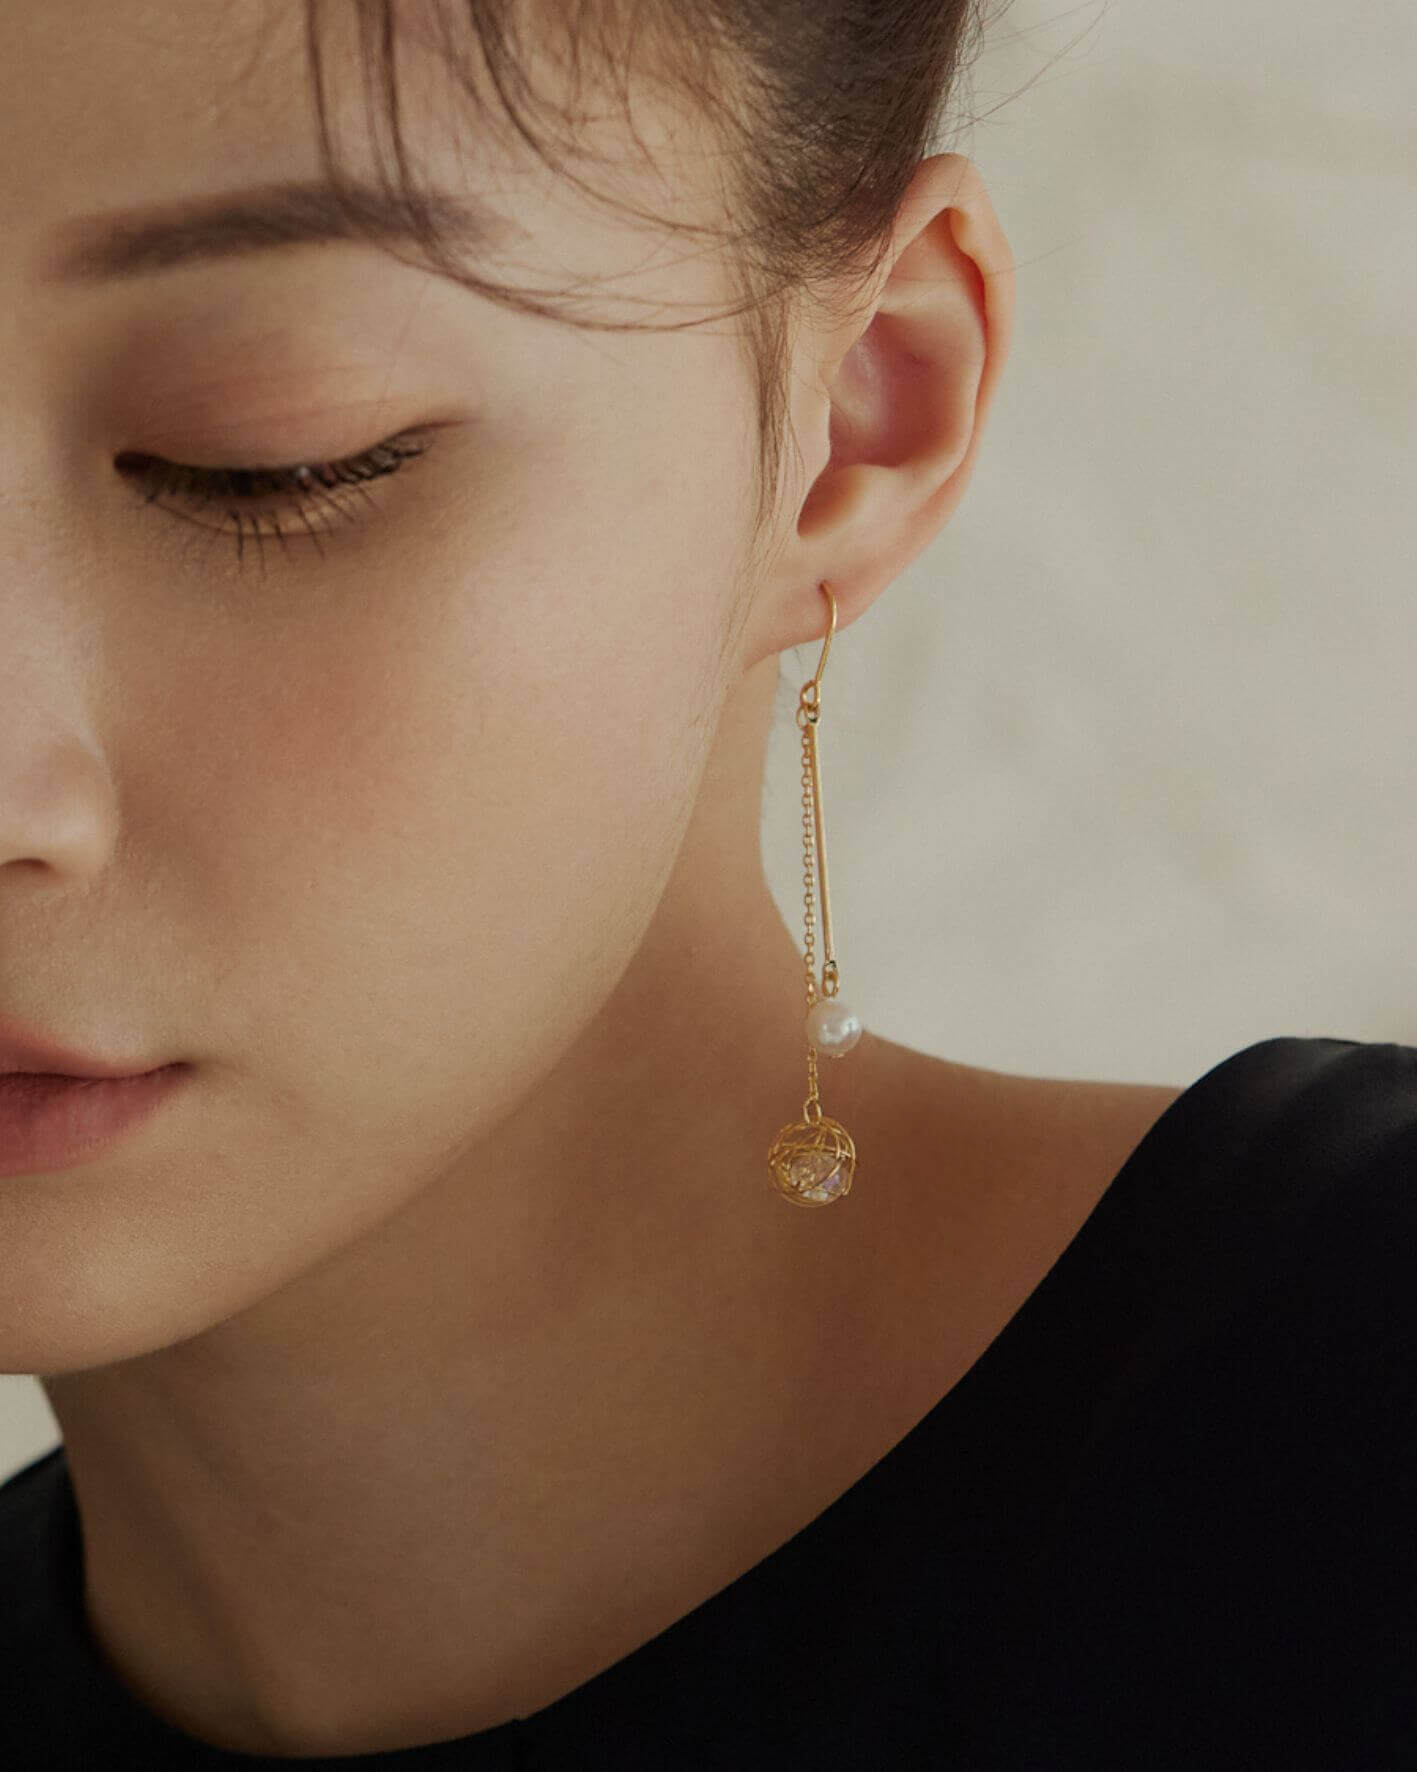 Eco安珂,韓國飾品,韓國耳環,韓國針式耳環,垂墜耳環,針式耳環,勾針式耳環,勾針式垂墜耳環,勾針耳環